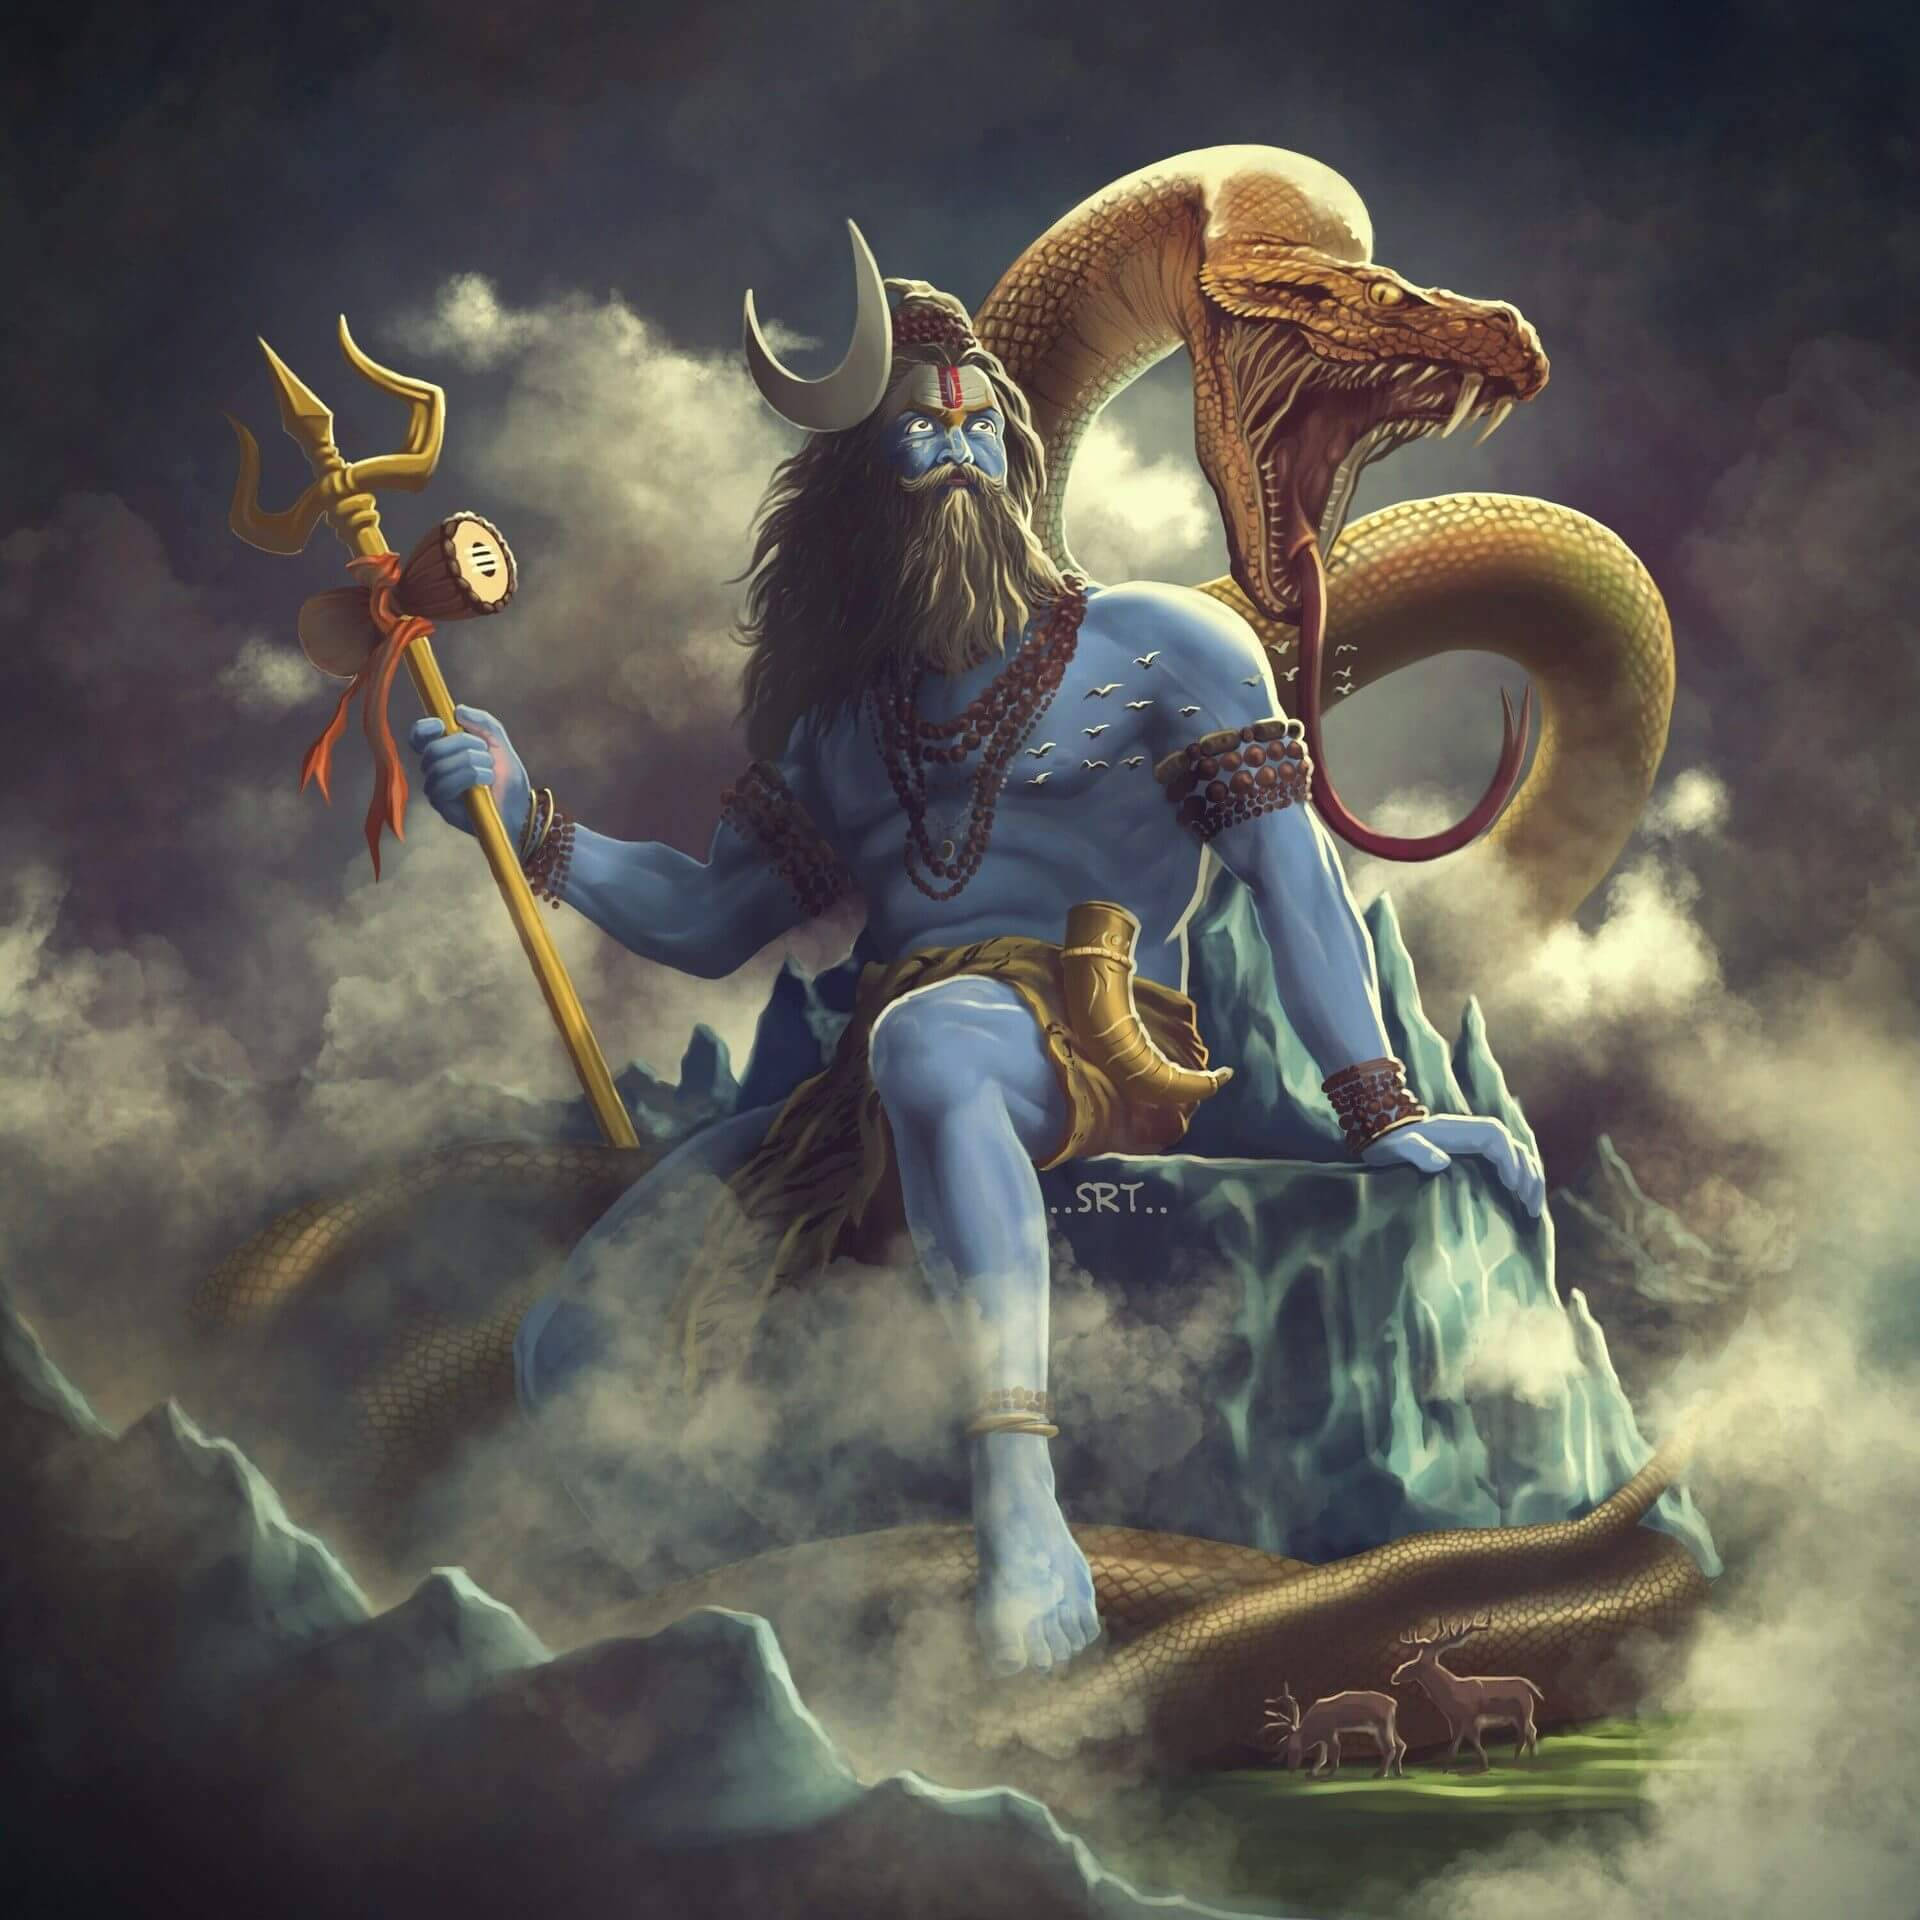 Mighty Lord Shiva